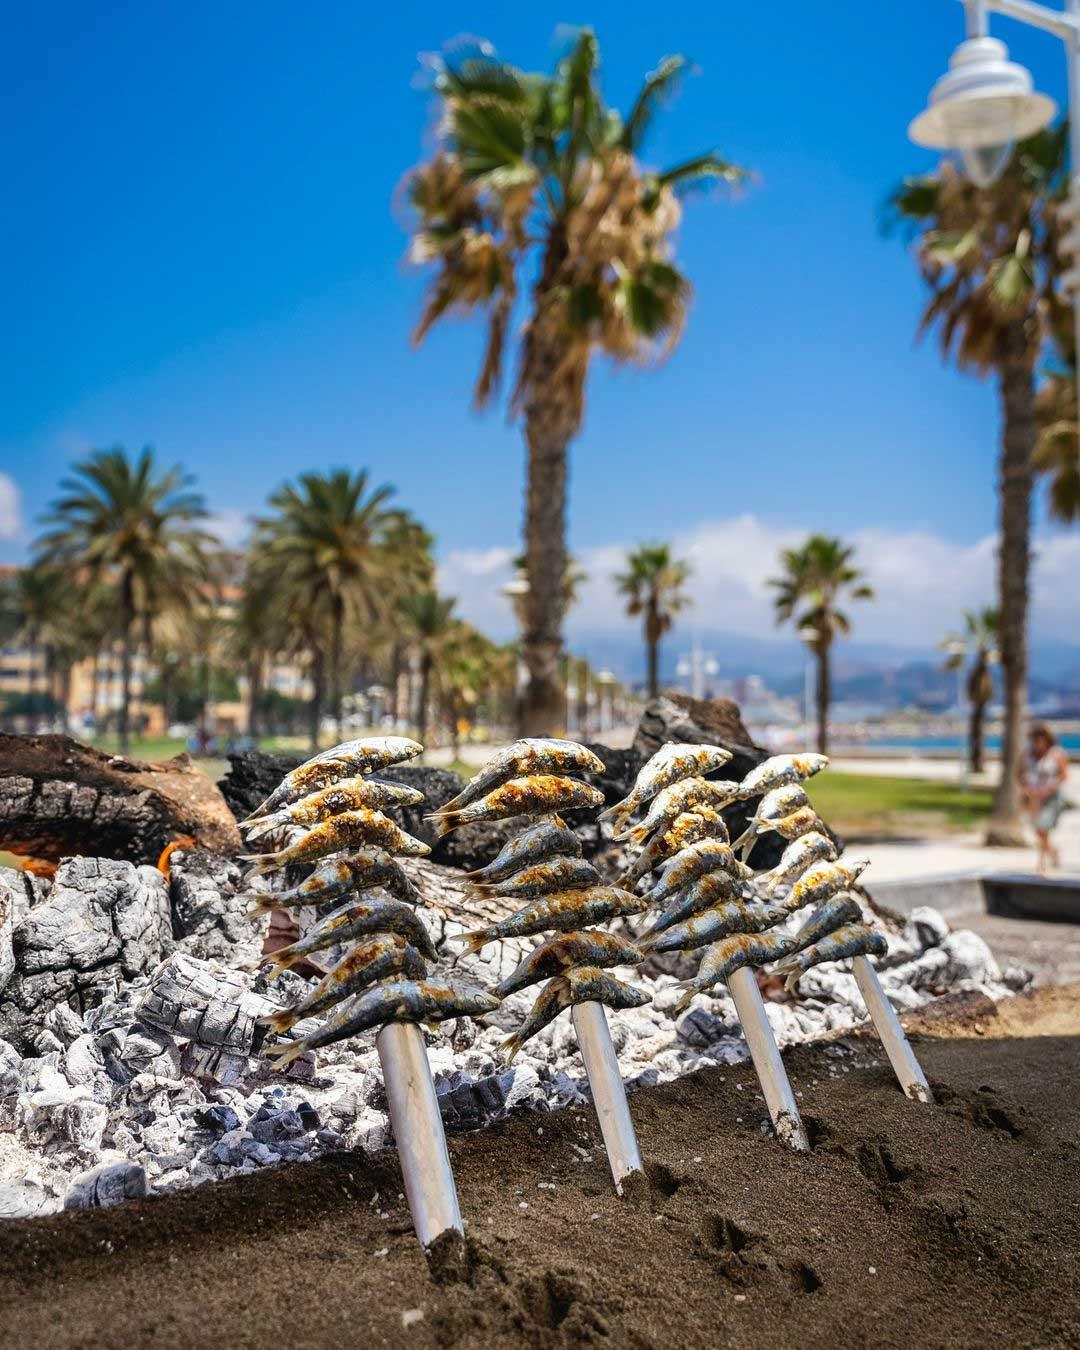 Les fameux espetos, sardines cuites au feu de bois sur la côte © @malagaturismo